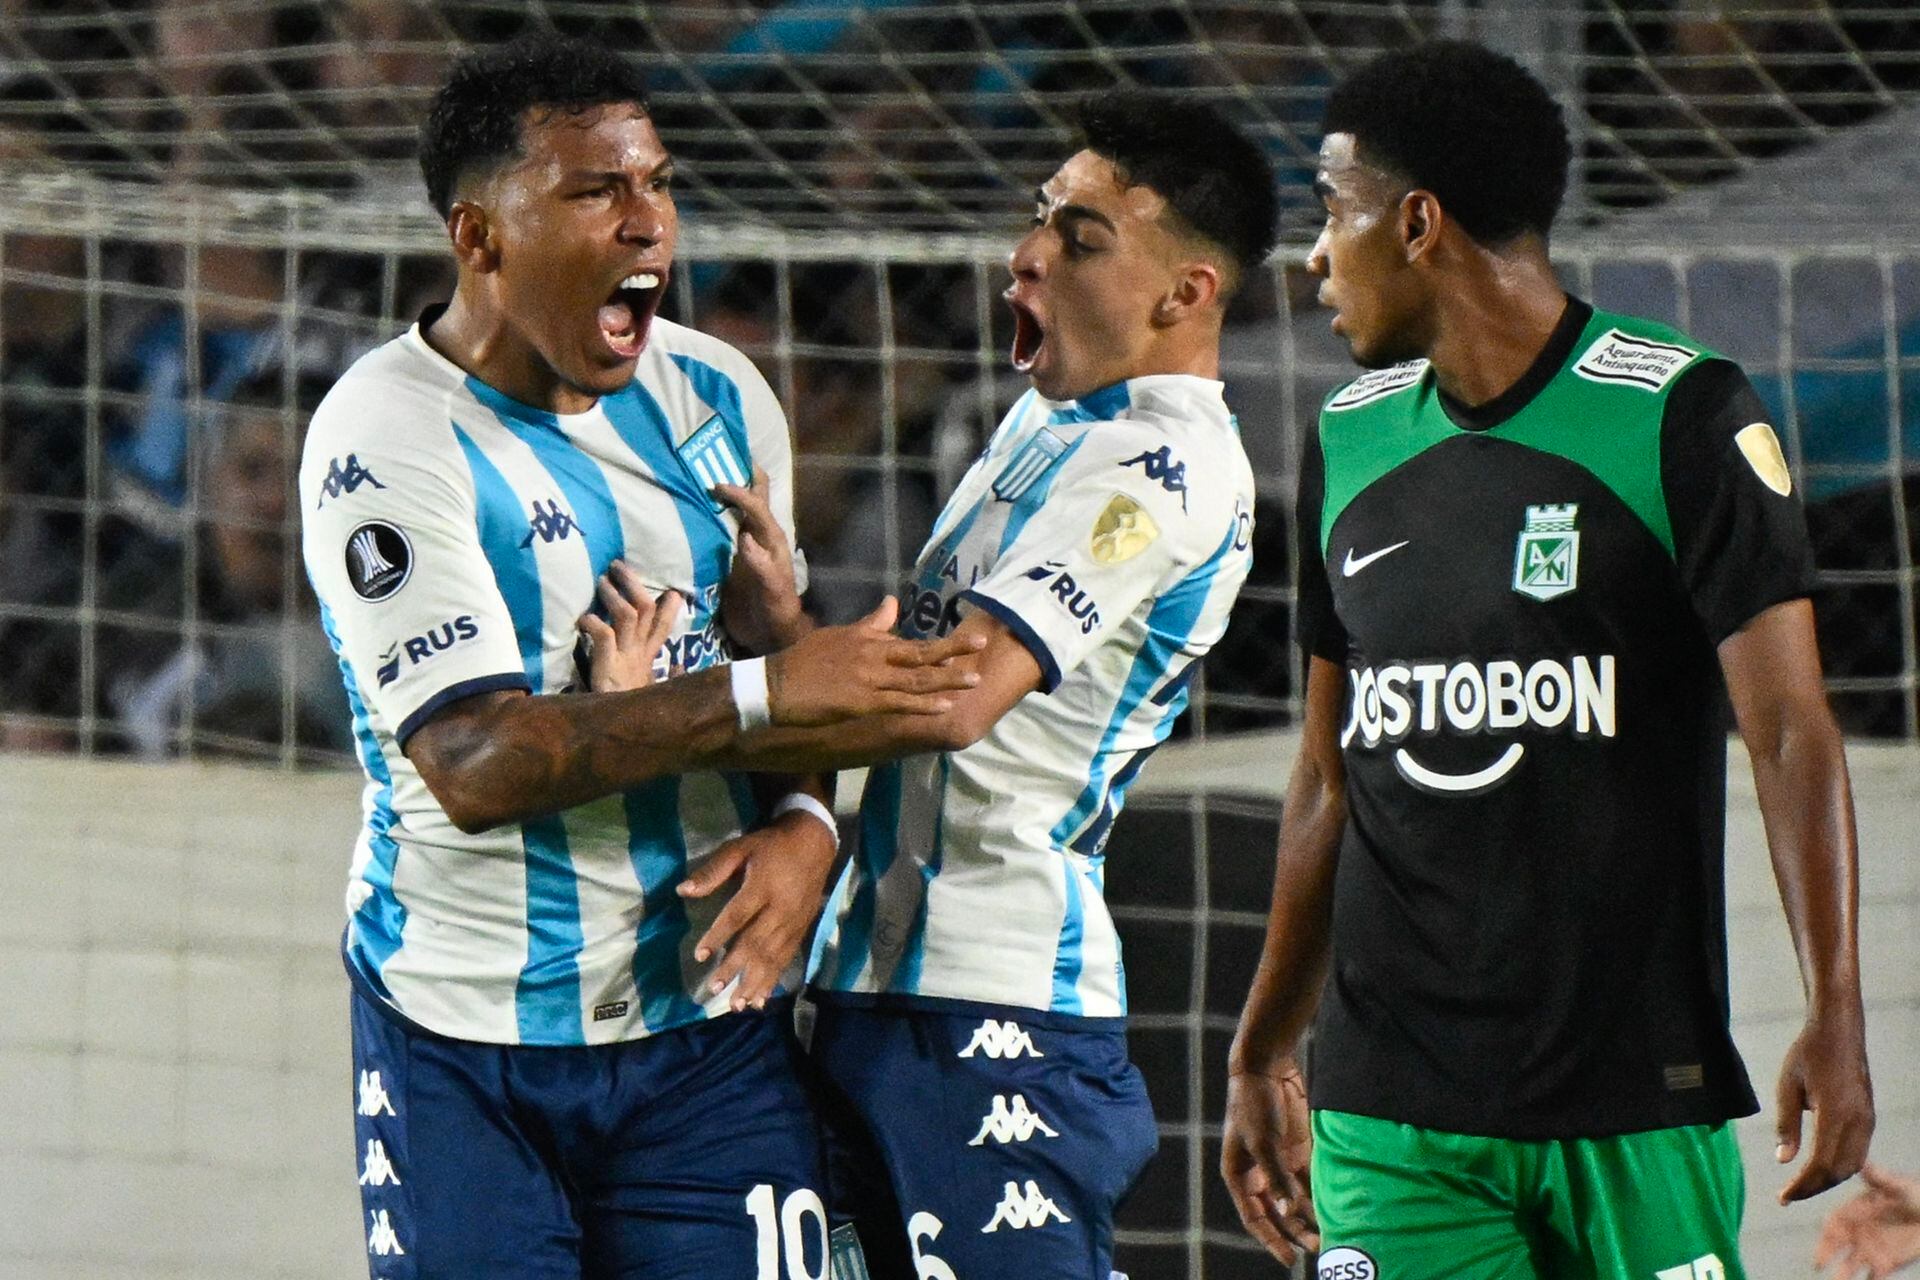 Racing converte dois pênaltis, mas perde para o Atlético Nacional pela  Libertadores fora de casa, libertadores